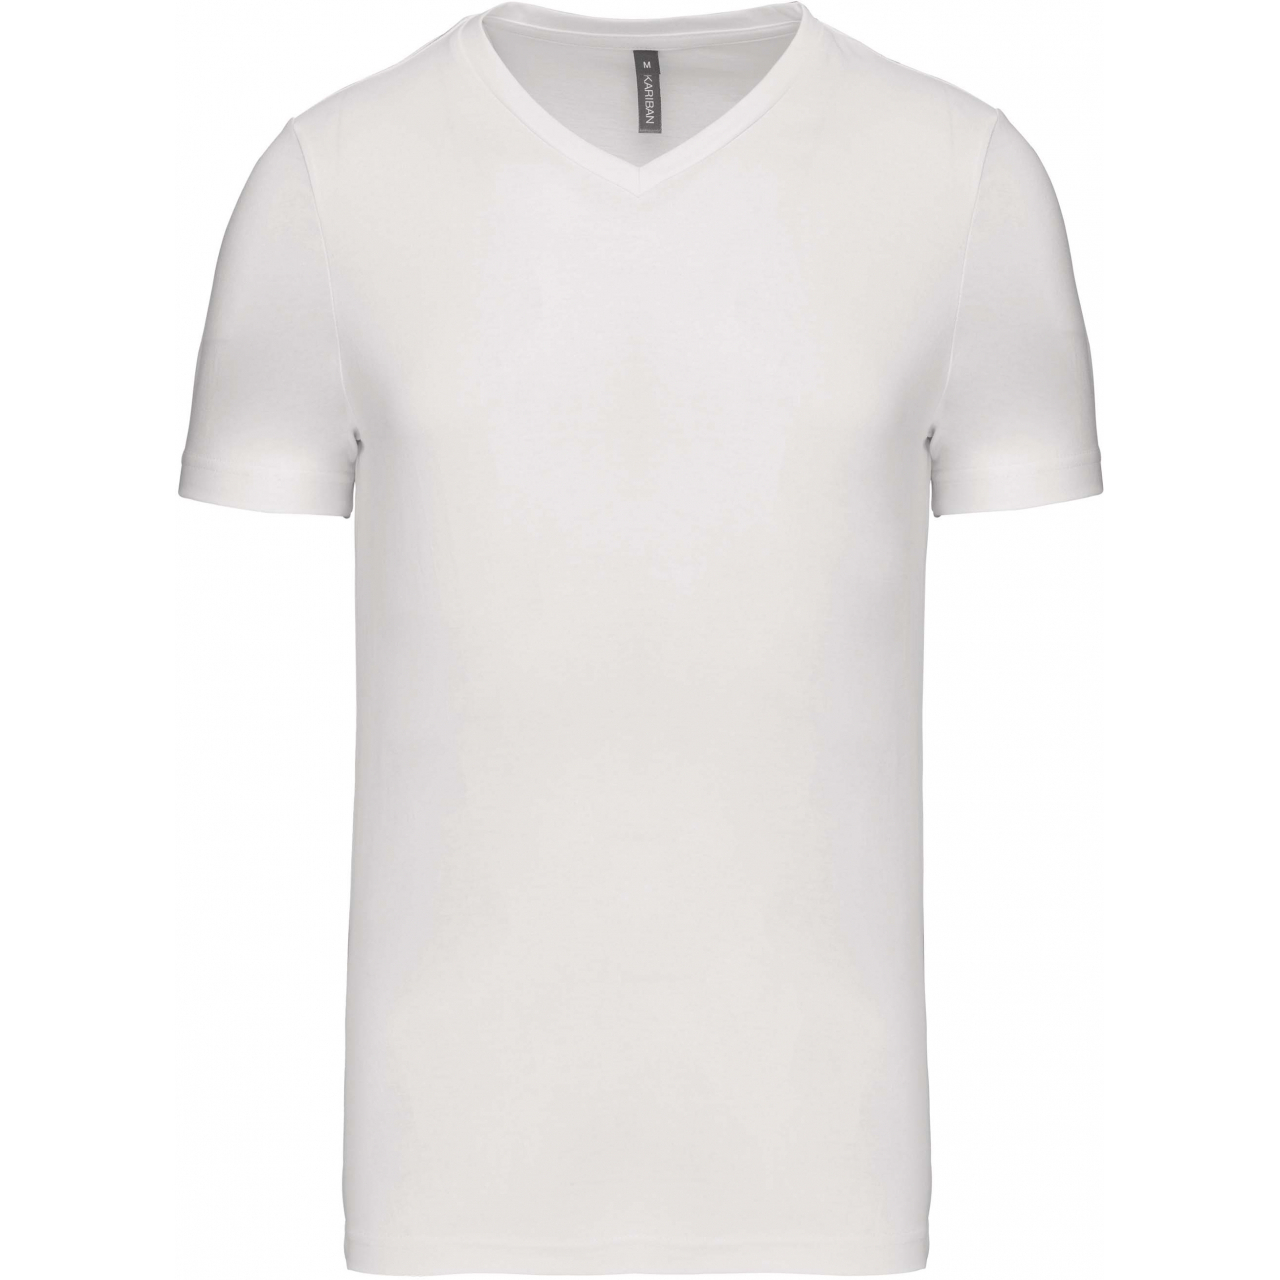 Pánské tričko Kariban krátký rukáv V-neck - bílé, S